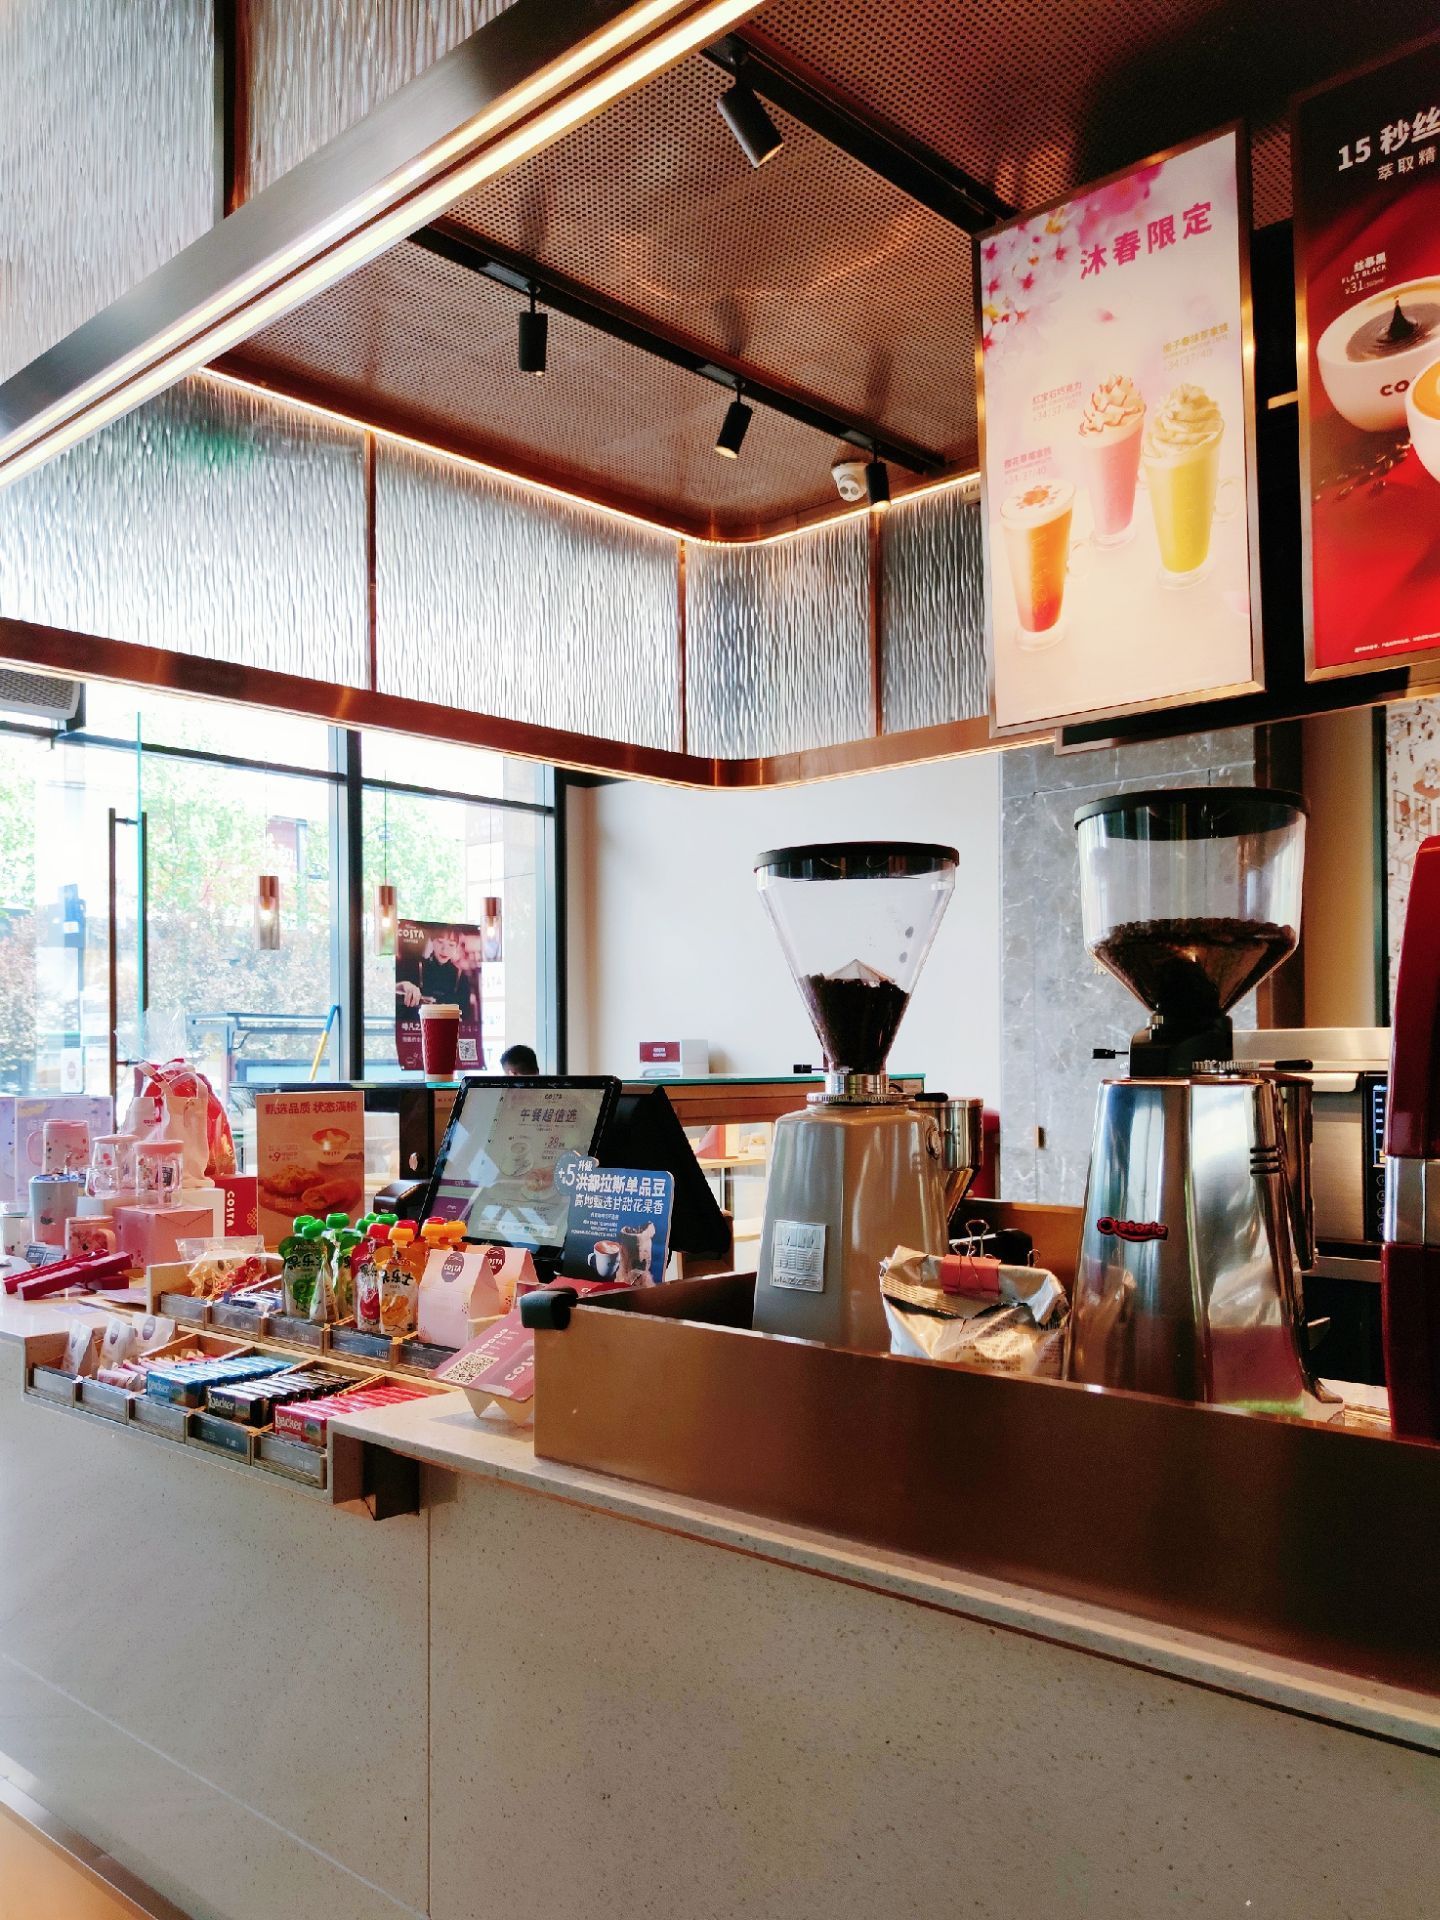 costa coffee(解百店) 50 分 1条点评 38/人 咖啡店 直线距离 100m